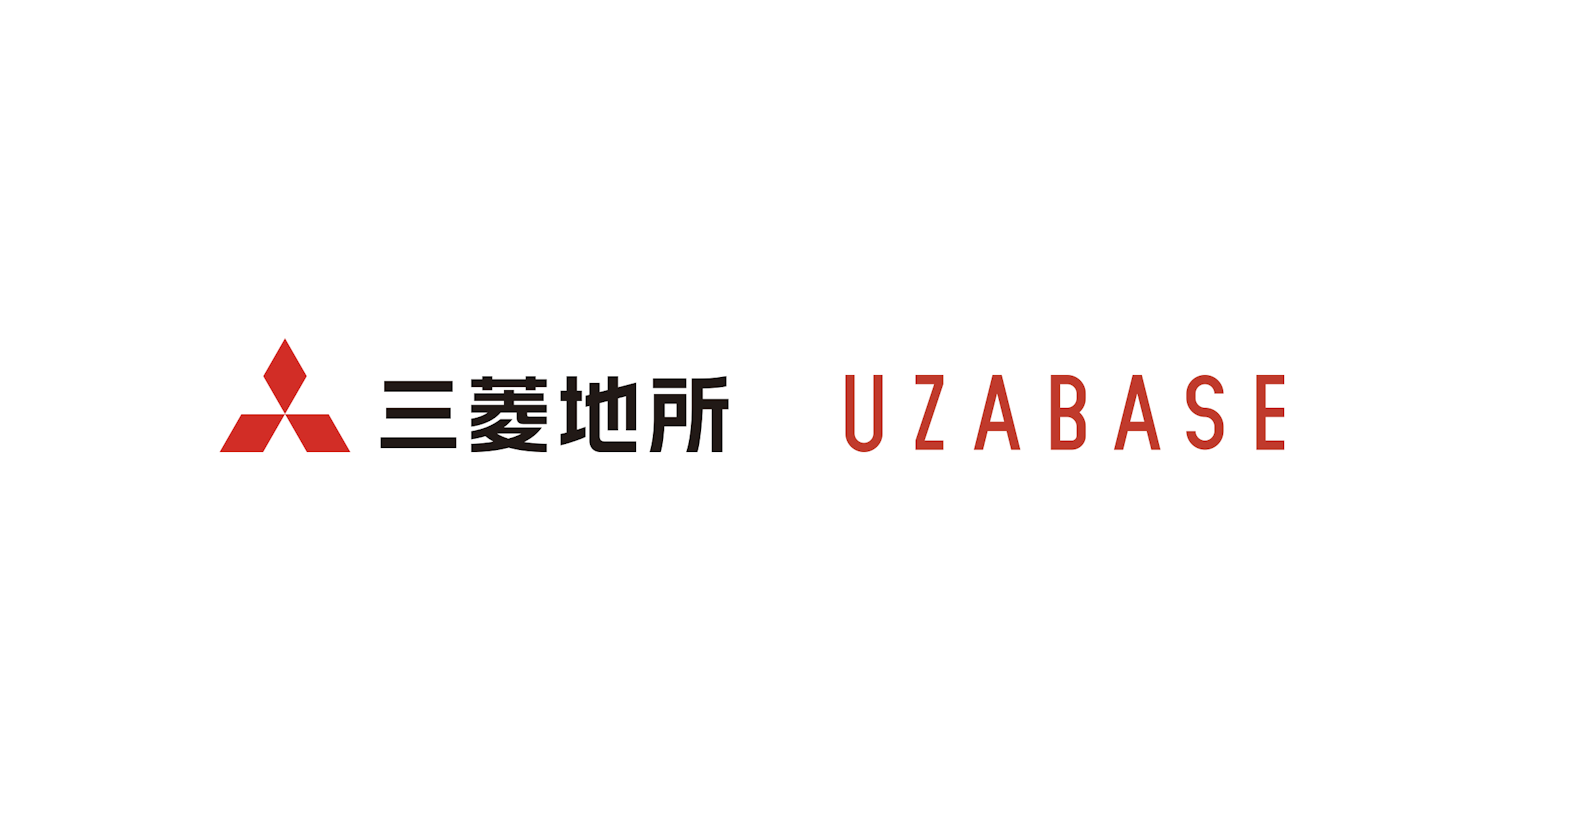 ユーザベース、三菱地所株式会社と資本業務提携